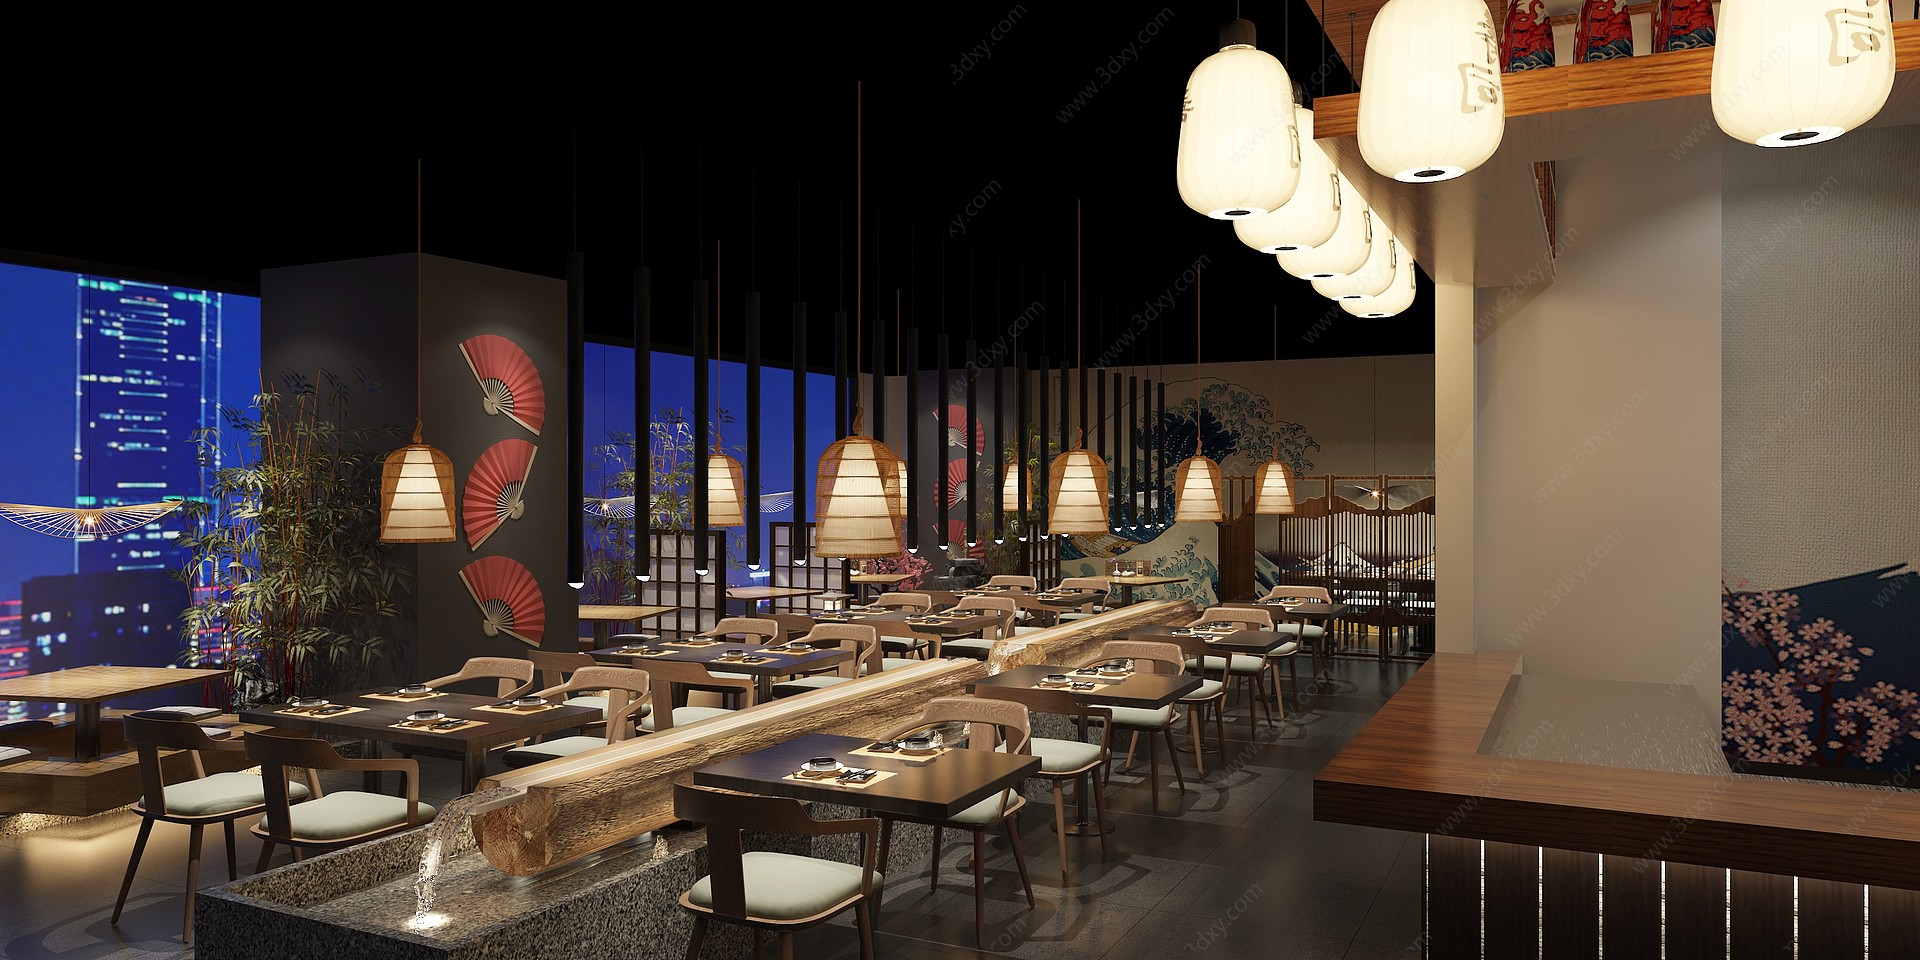 日式餐厅3D模型